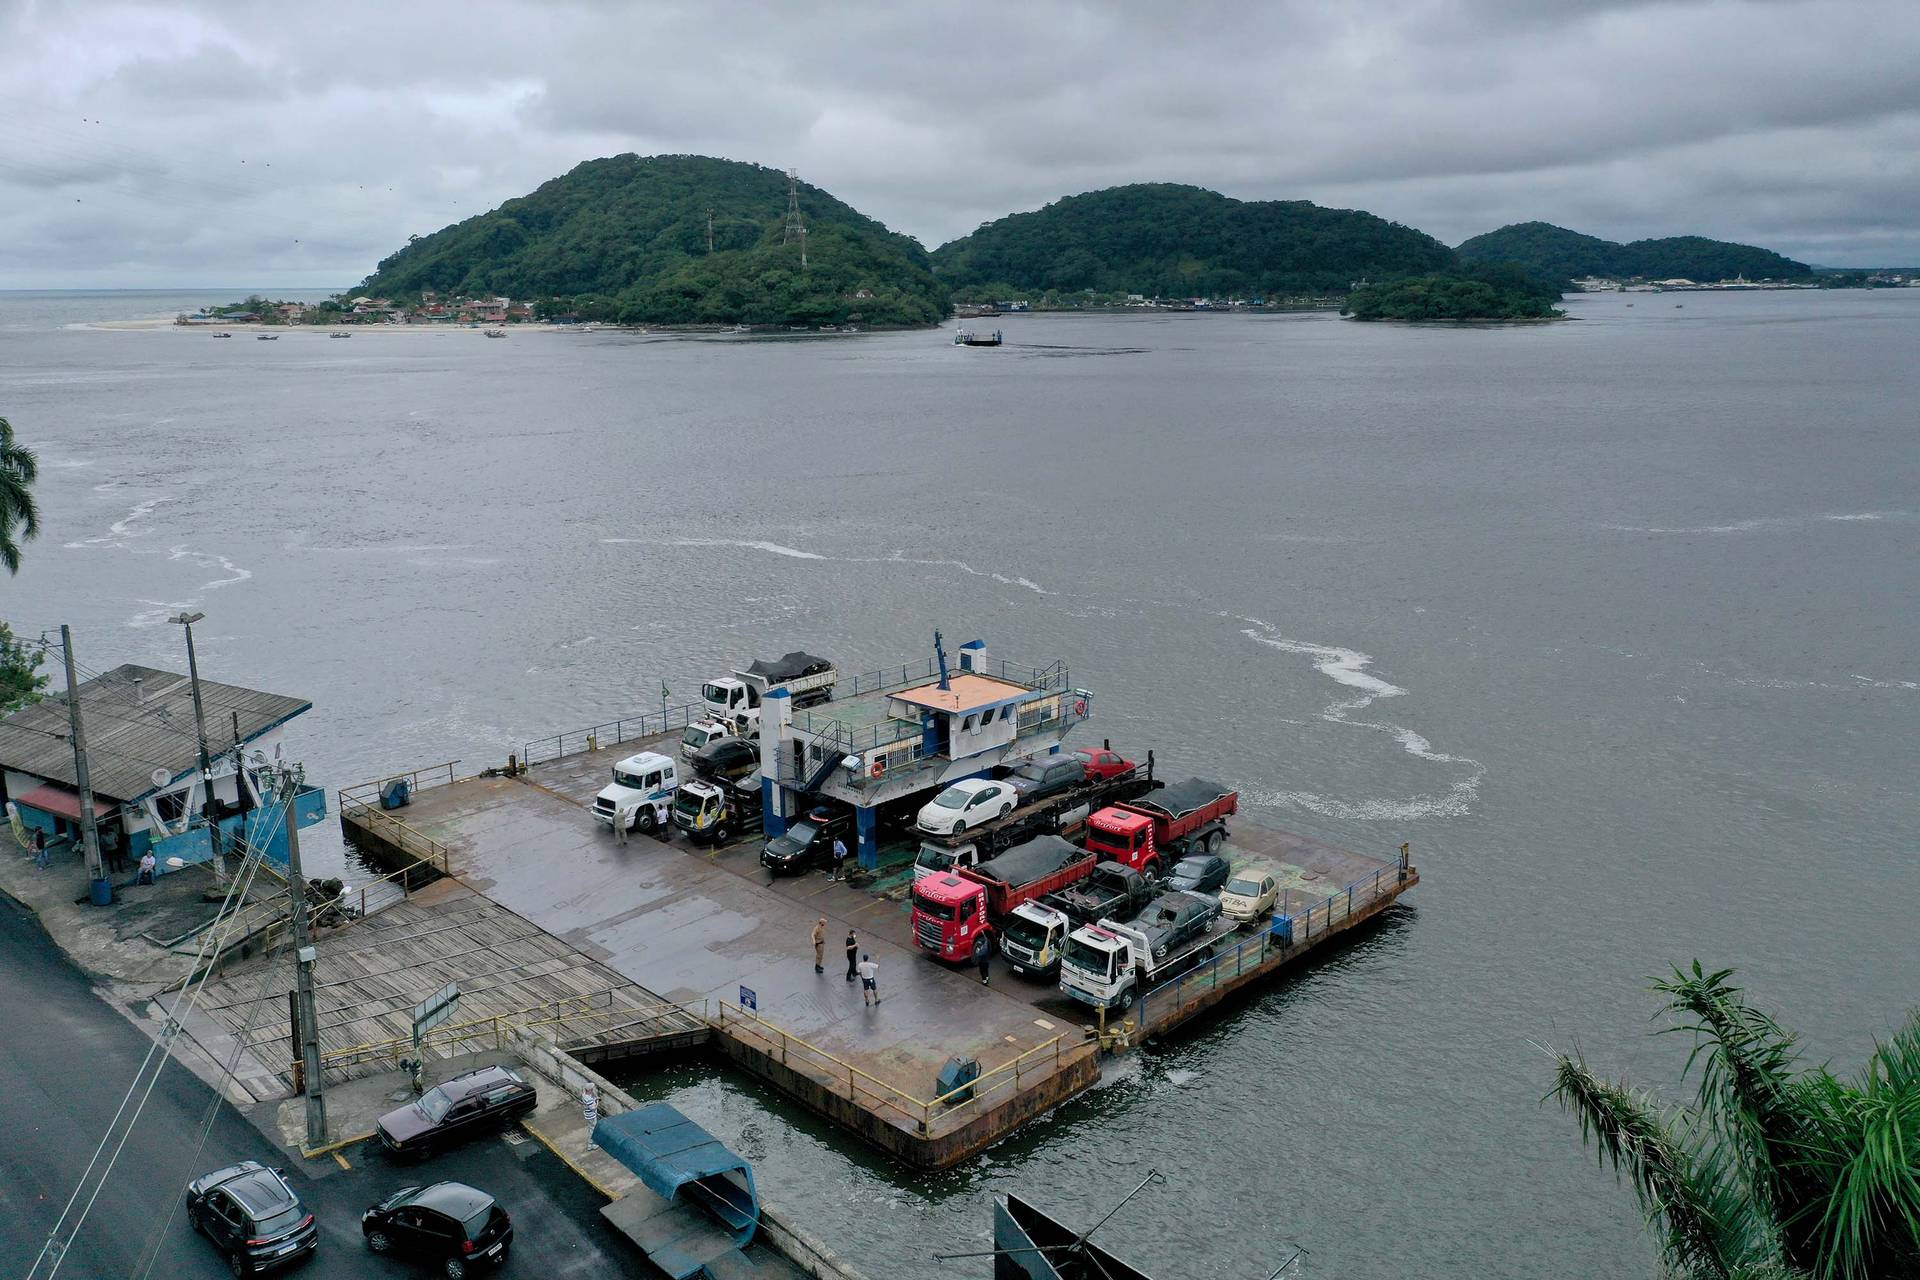  Ferry-boat: trabalhadores da BR Travessias encerram greve após promessa de pagamento de salários